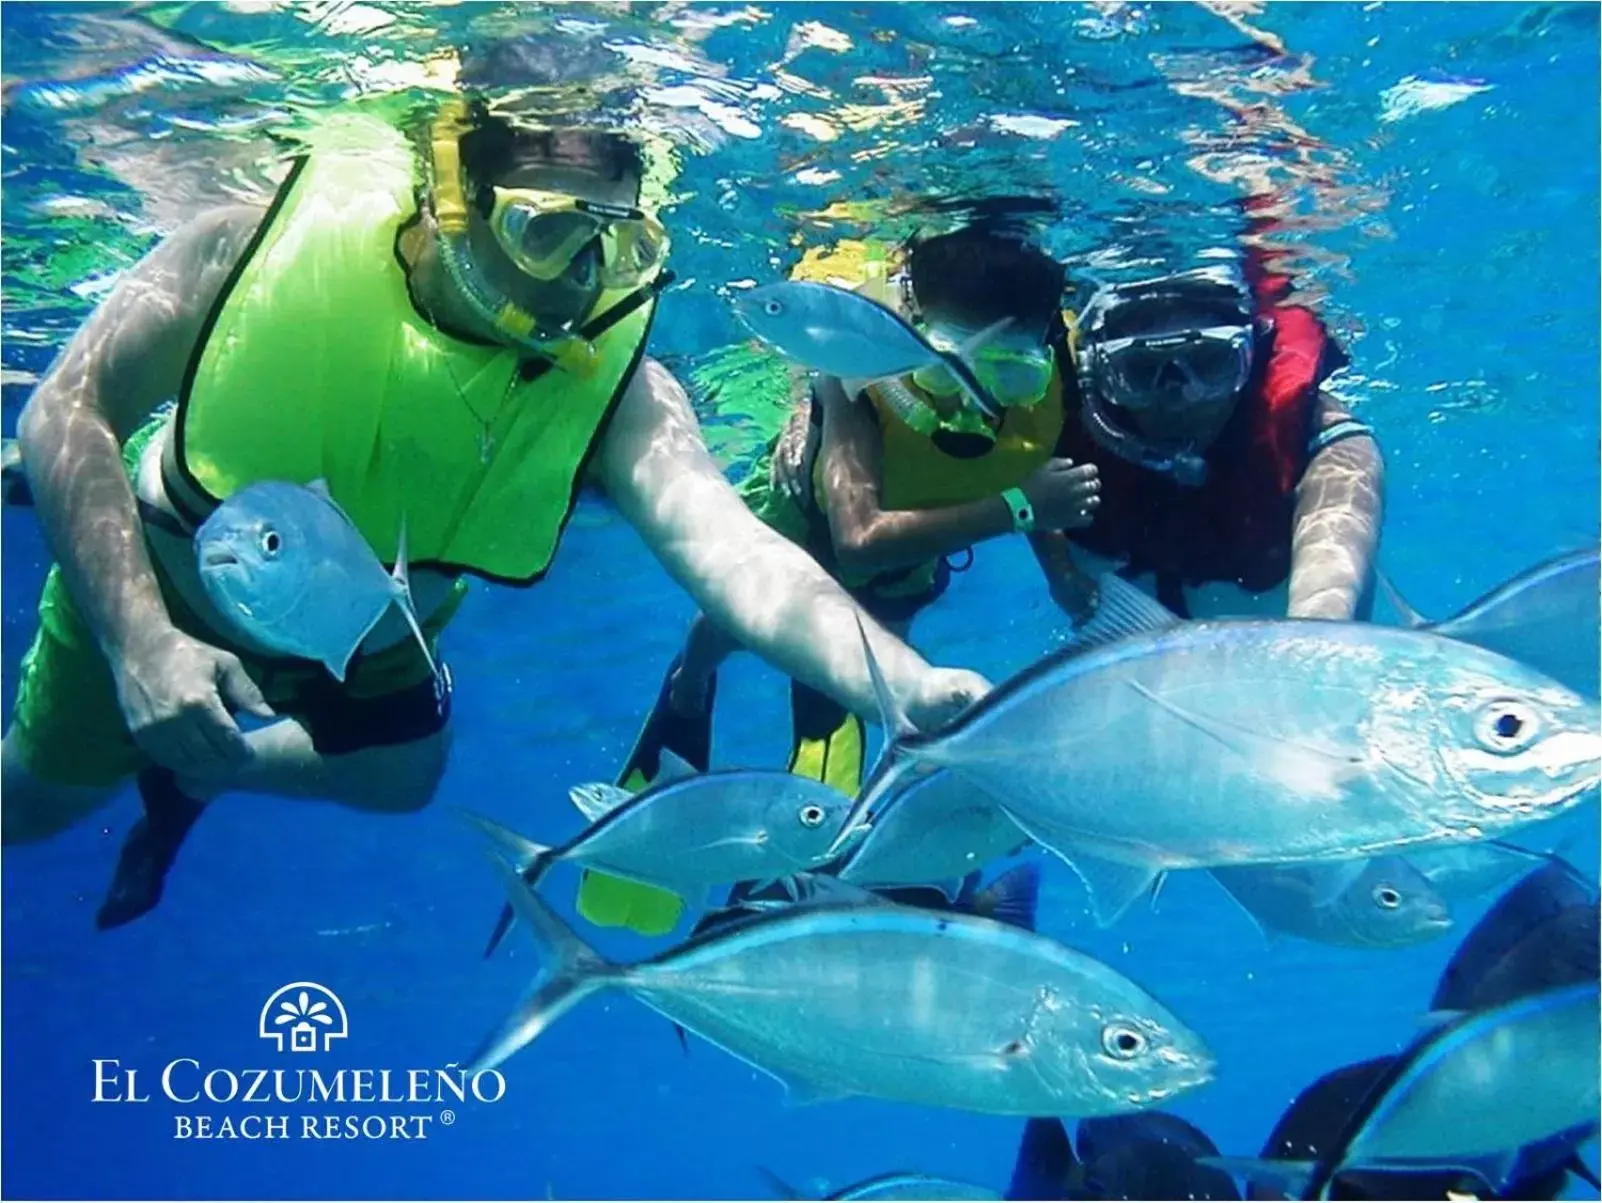 People, Snorkeling/Diving in El Cozumeleño Beach Resort - All Inclusive